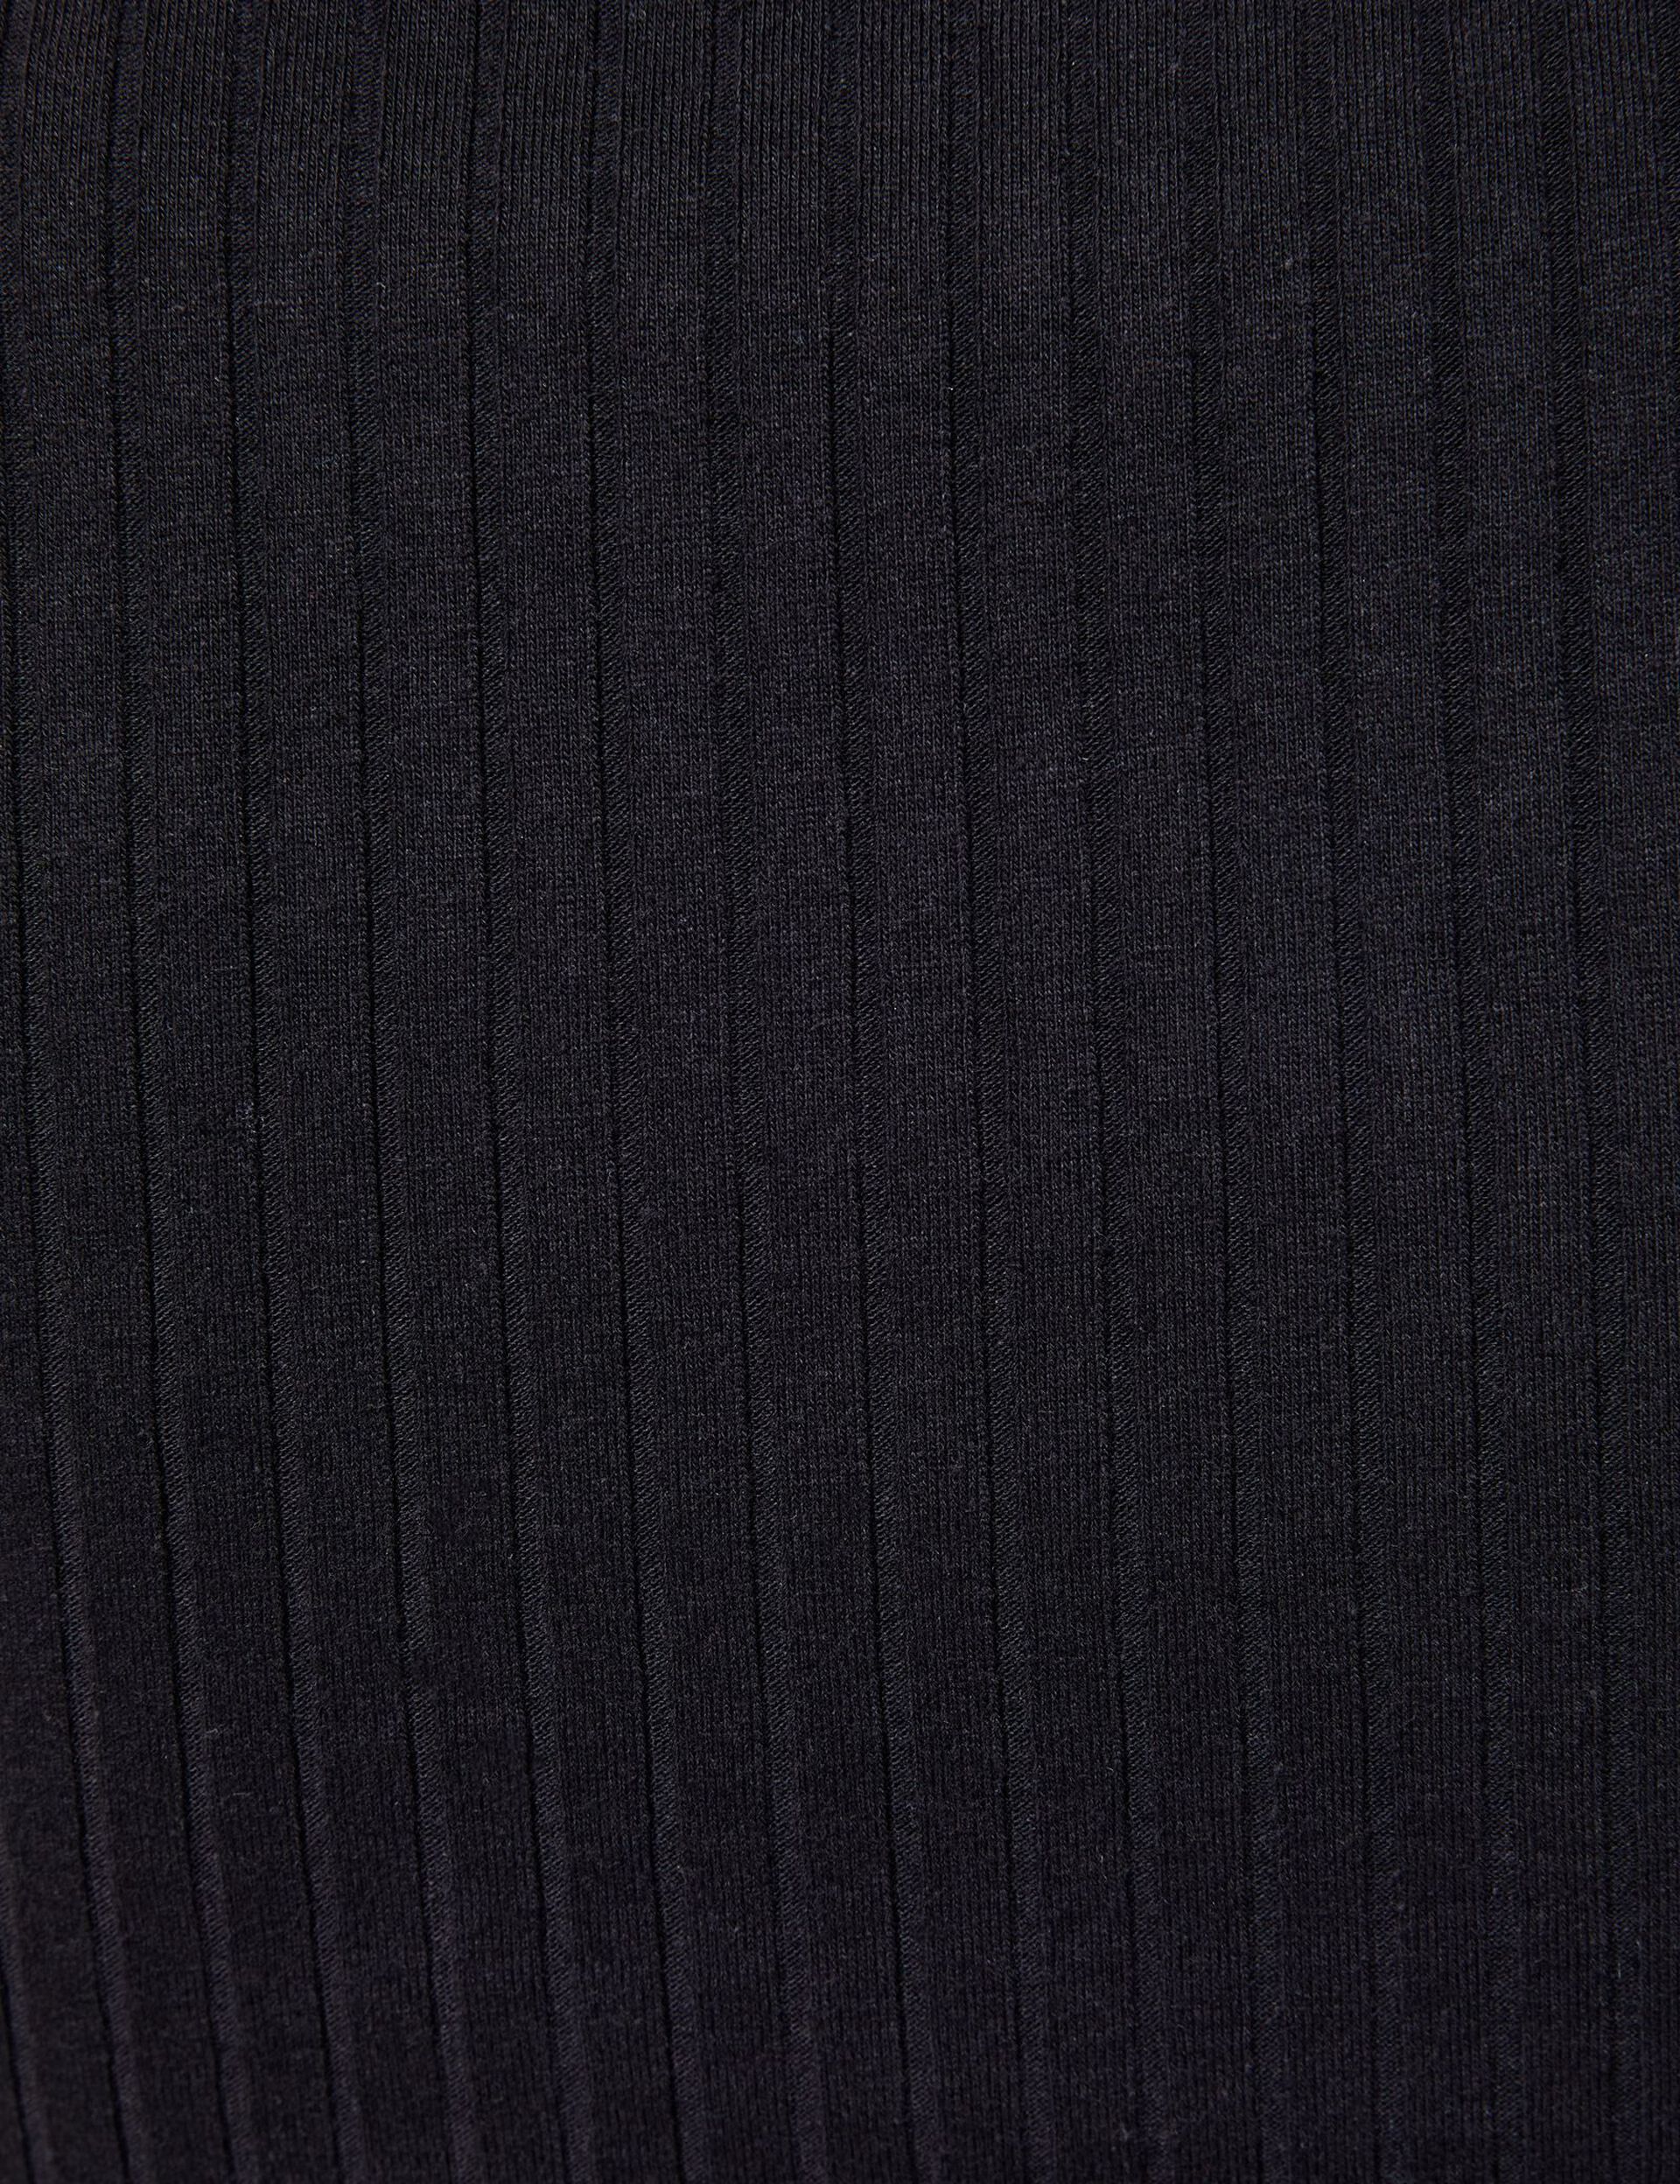 Tee-shirt côtelé style polo noir